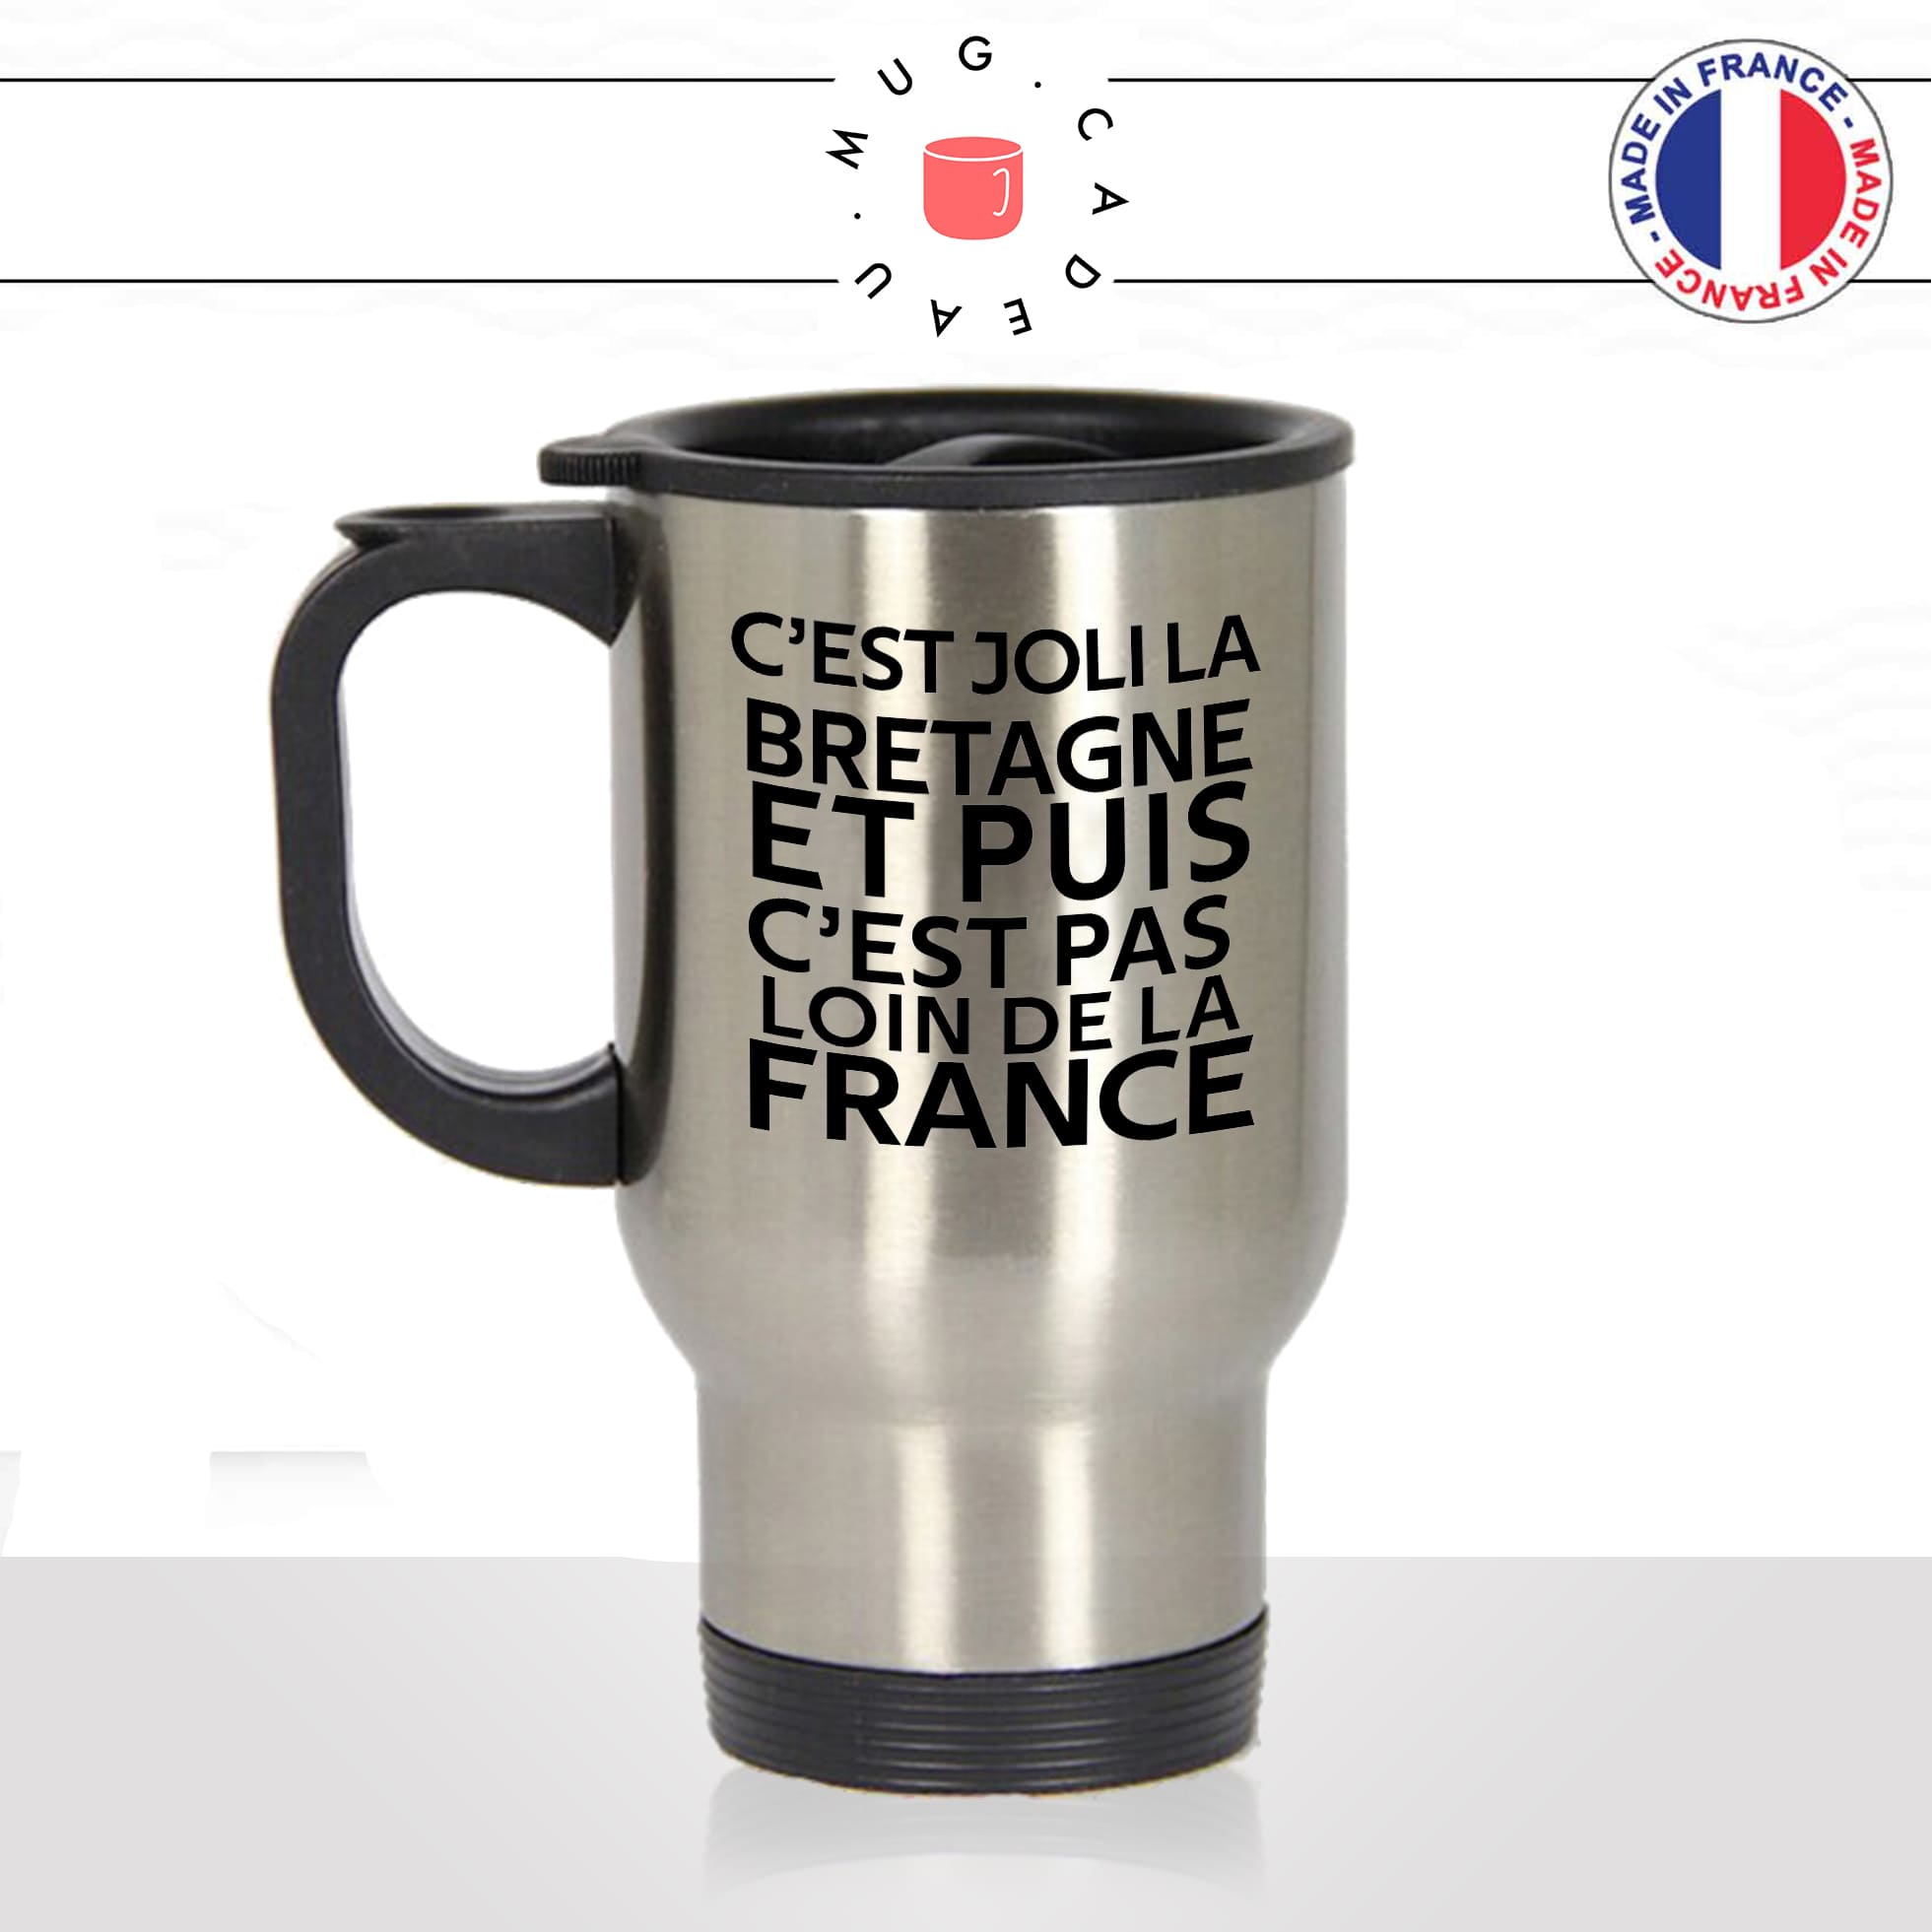 mug-tasse-thermos-isotherme-voyage-citation-phrase-culte-coluche-cest-joli-la-bretagne-france-breton-humour-fun-idée-cadeau-originale-cool